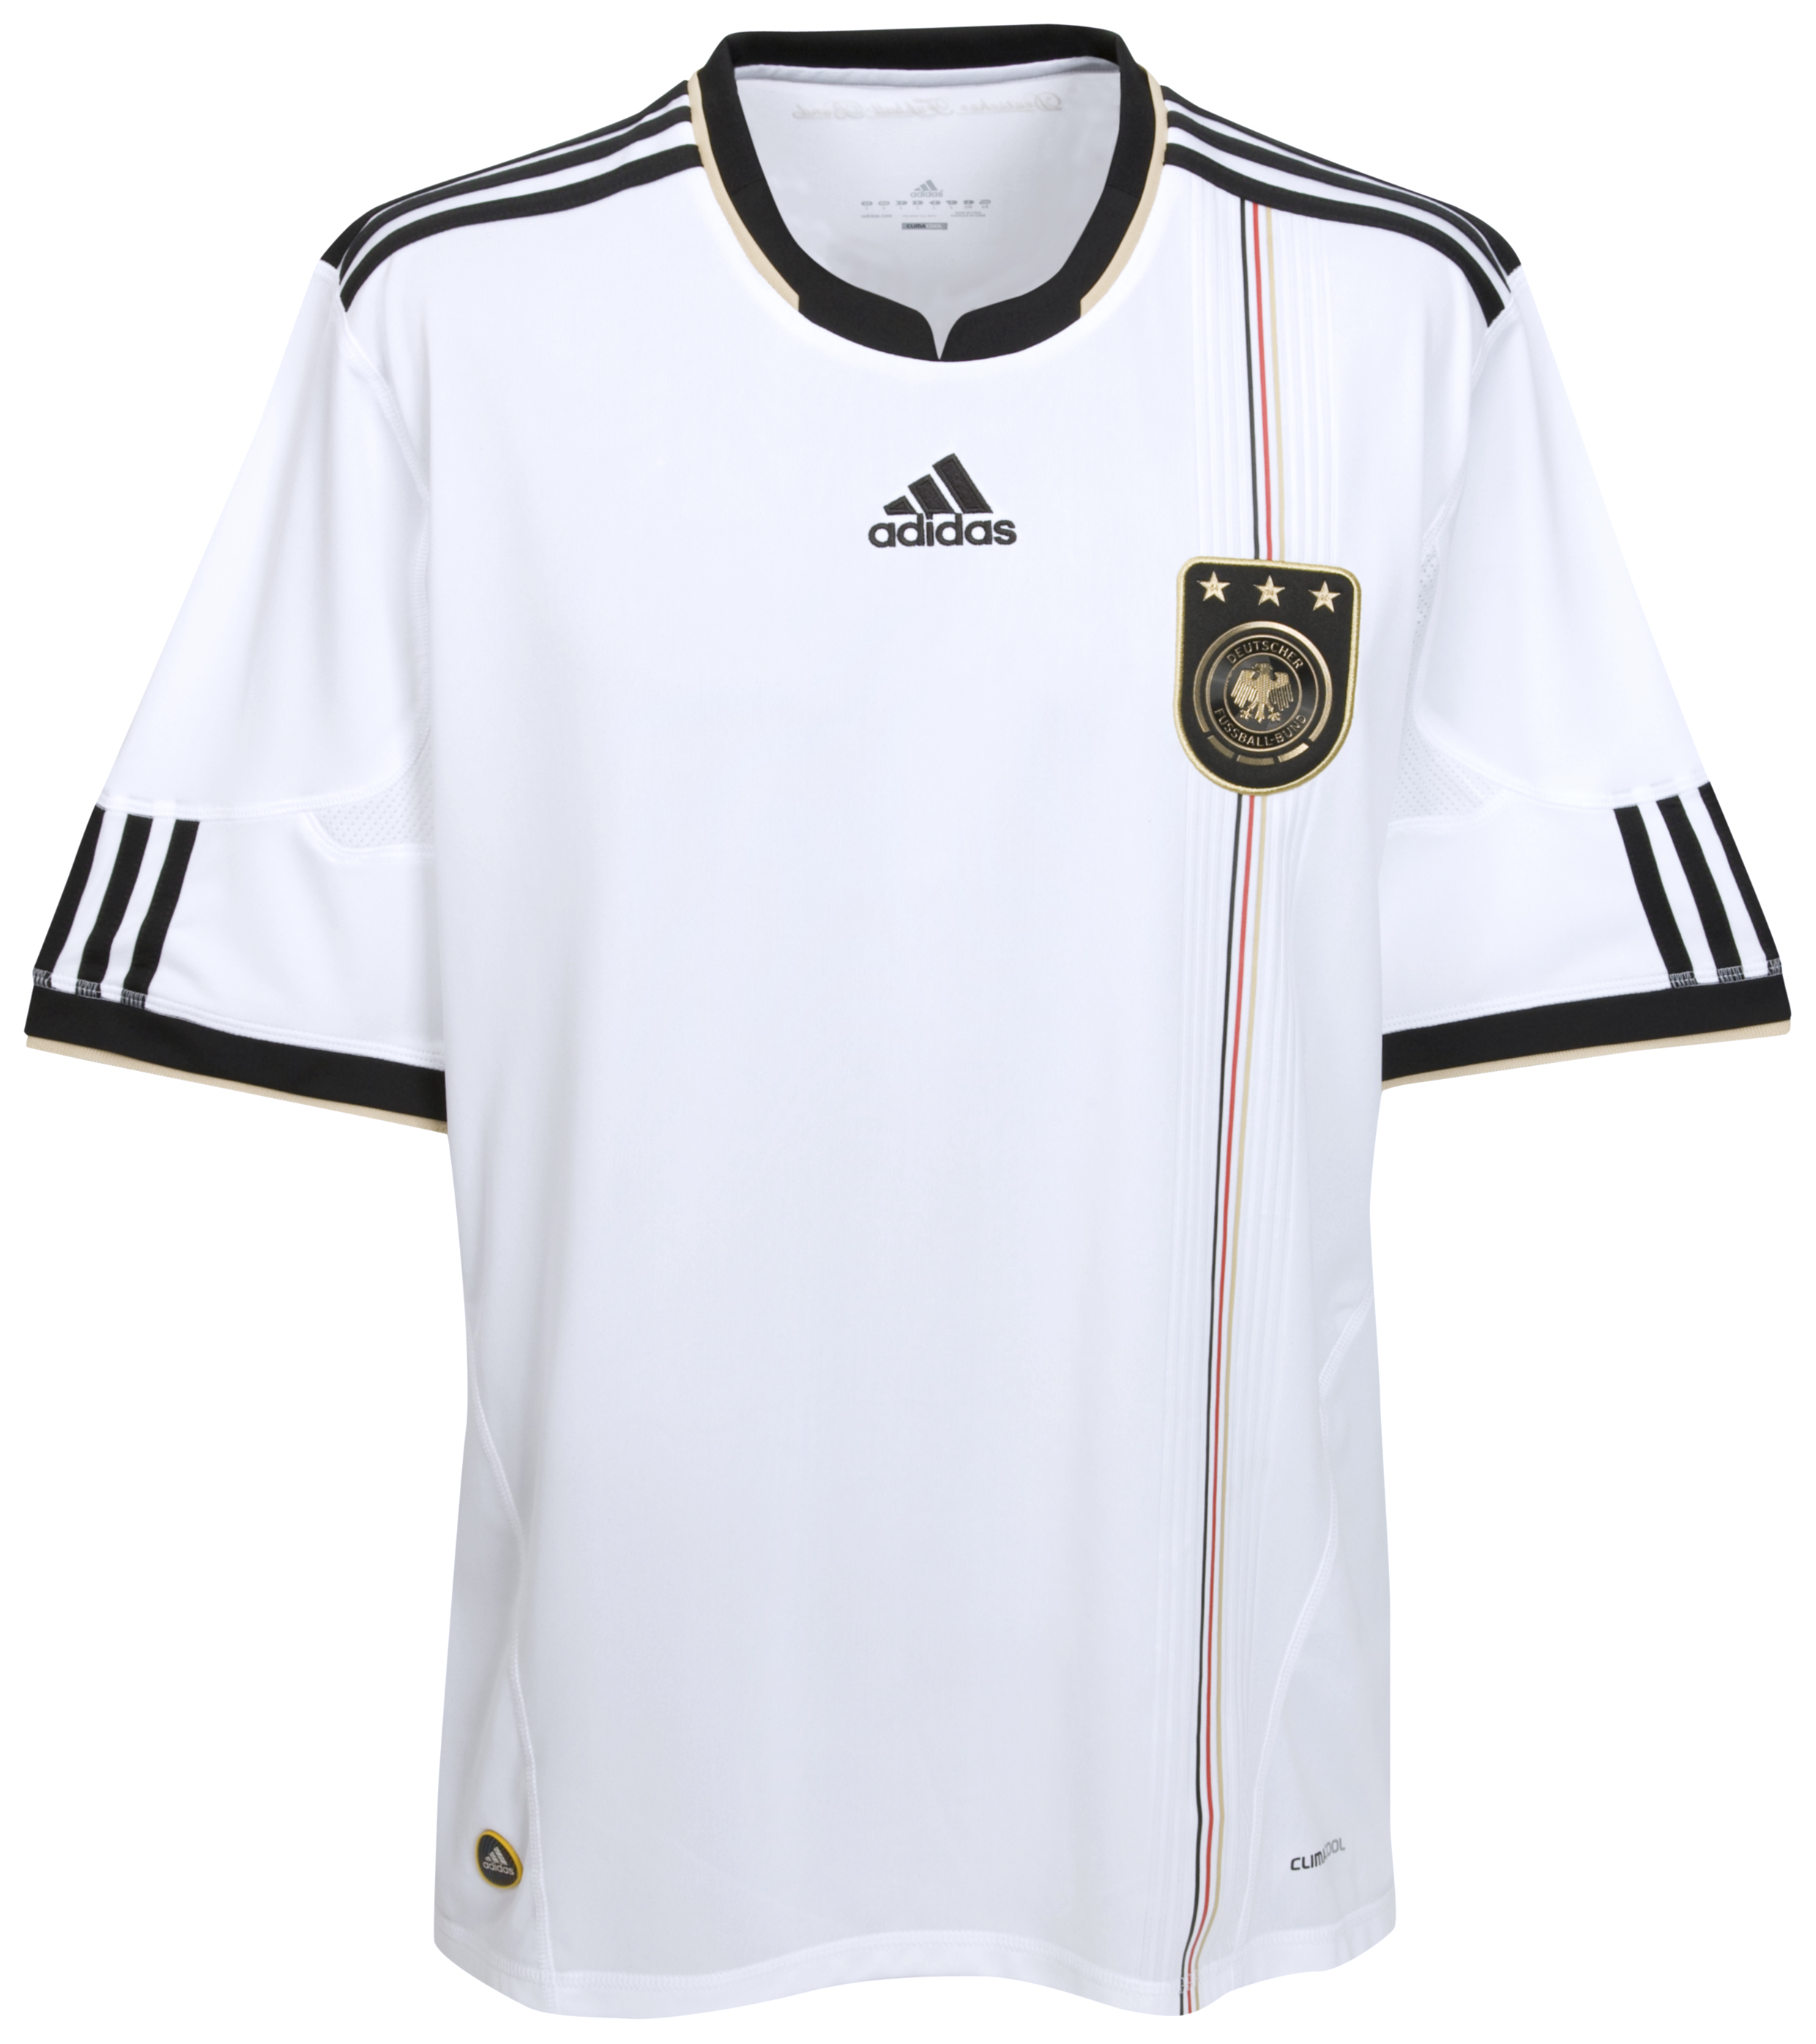 الملابس الرسمية لكأس العالم 2010 Cfc-63741